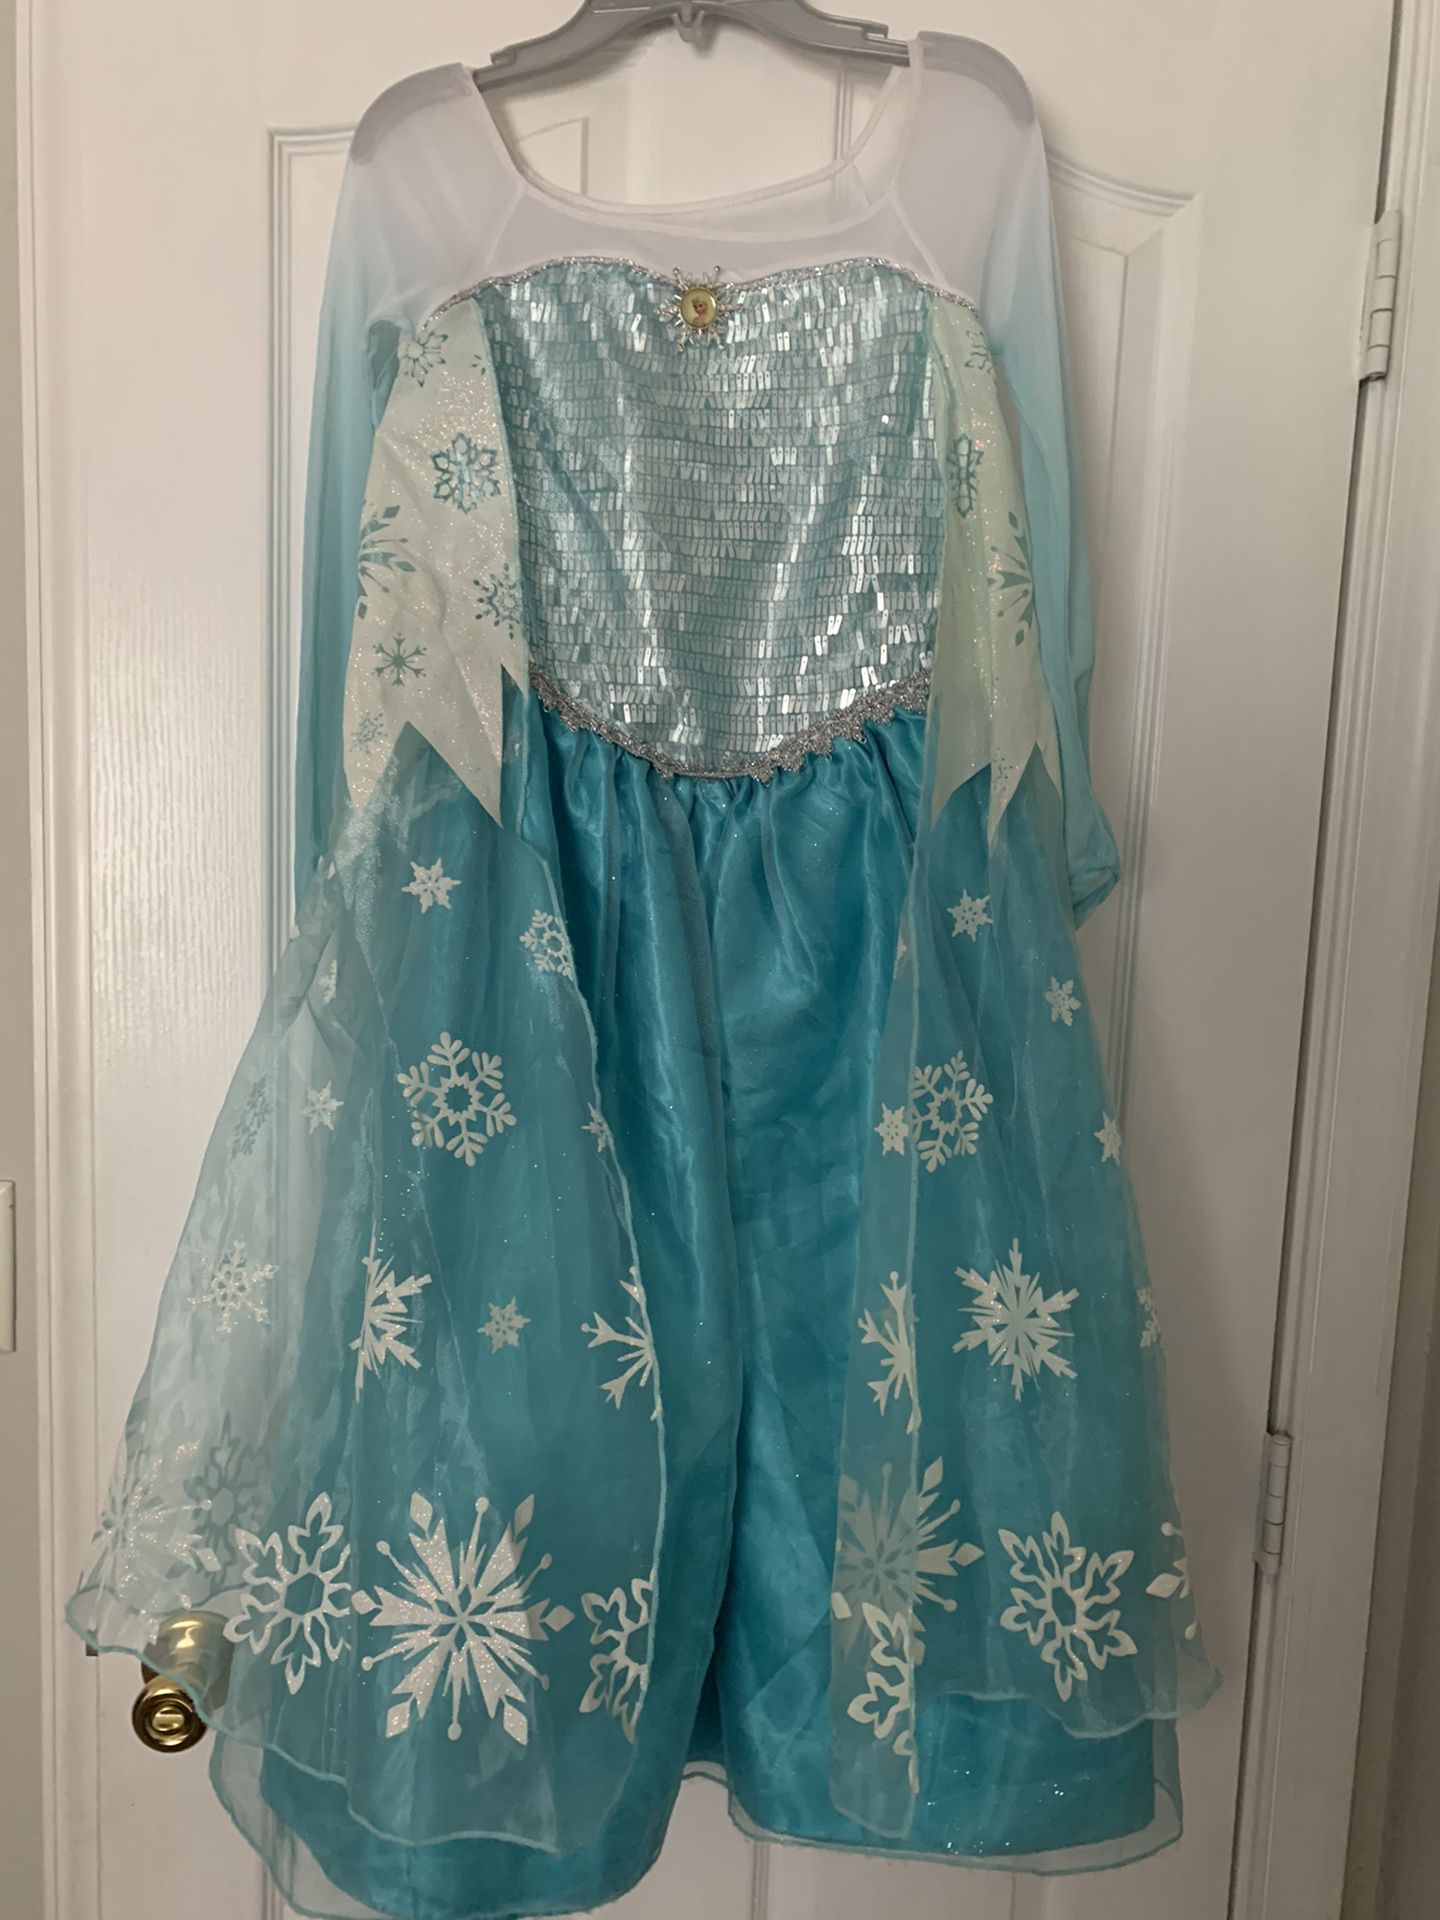 Disney Store Elsa costume size 9-10 for girls